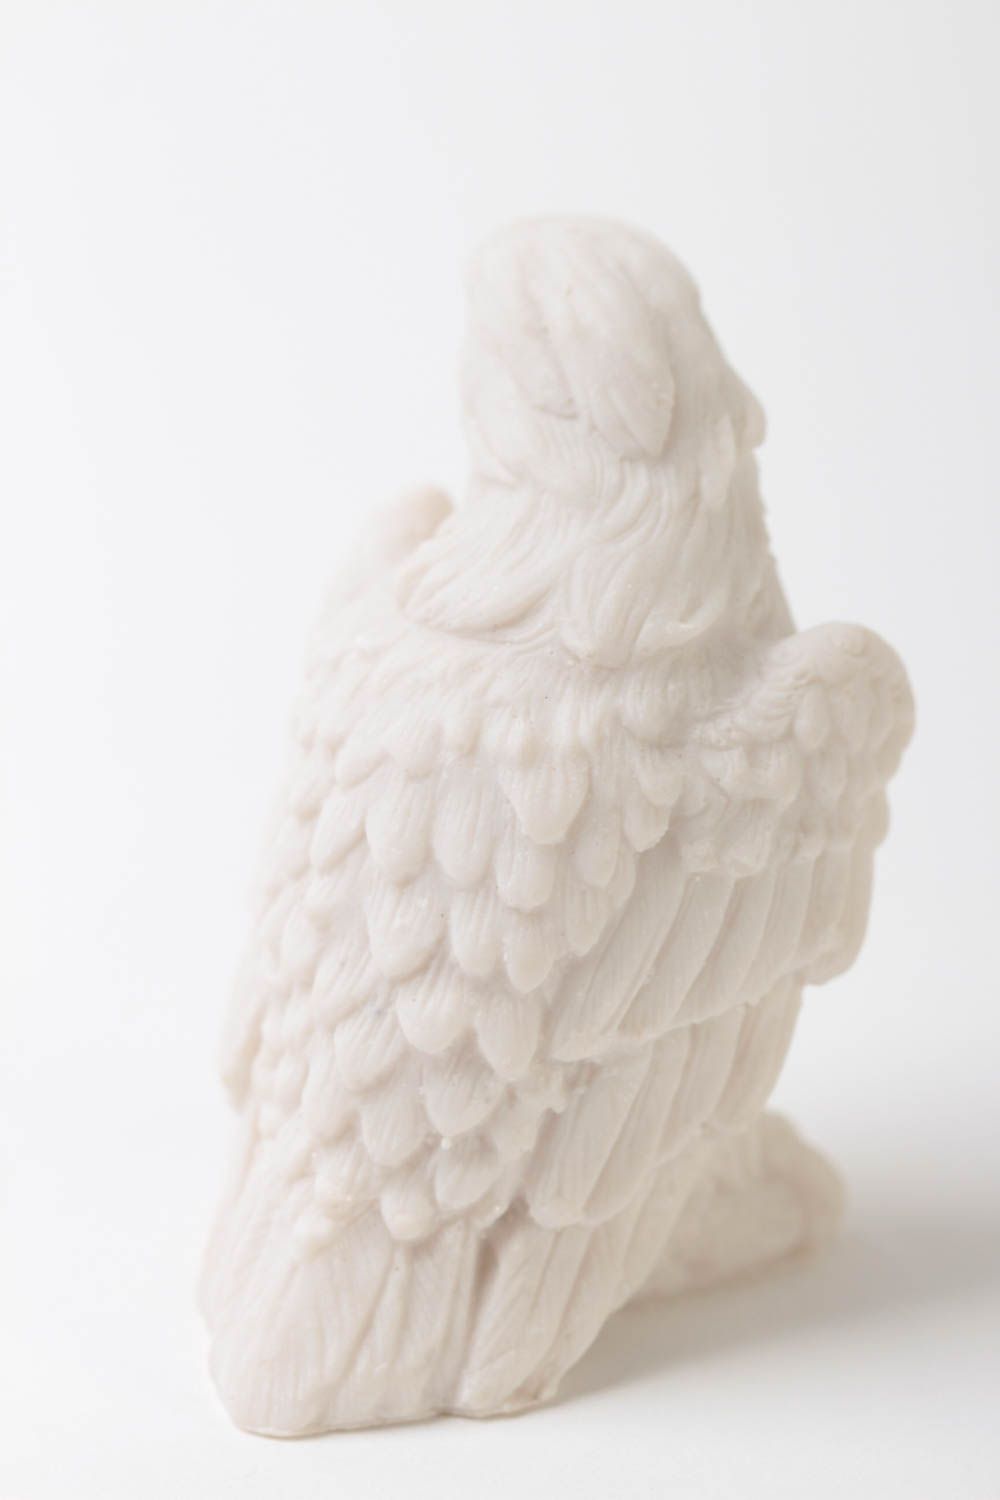 Handmade Adler Figur kleine Dekofigur Haus Dekoration Rohling zum Bemalen foto 4